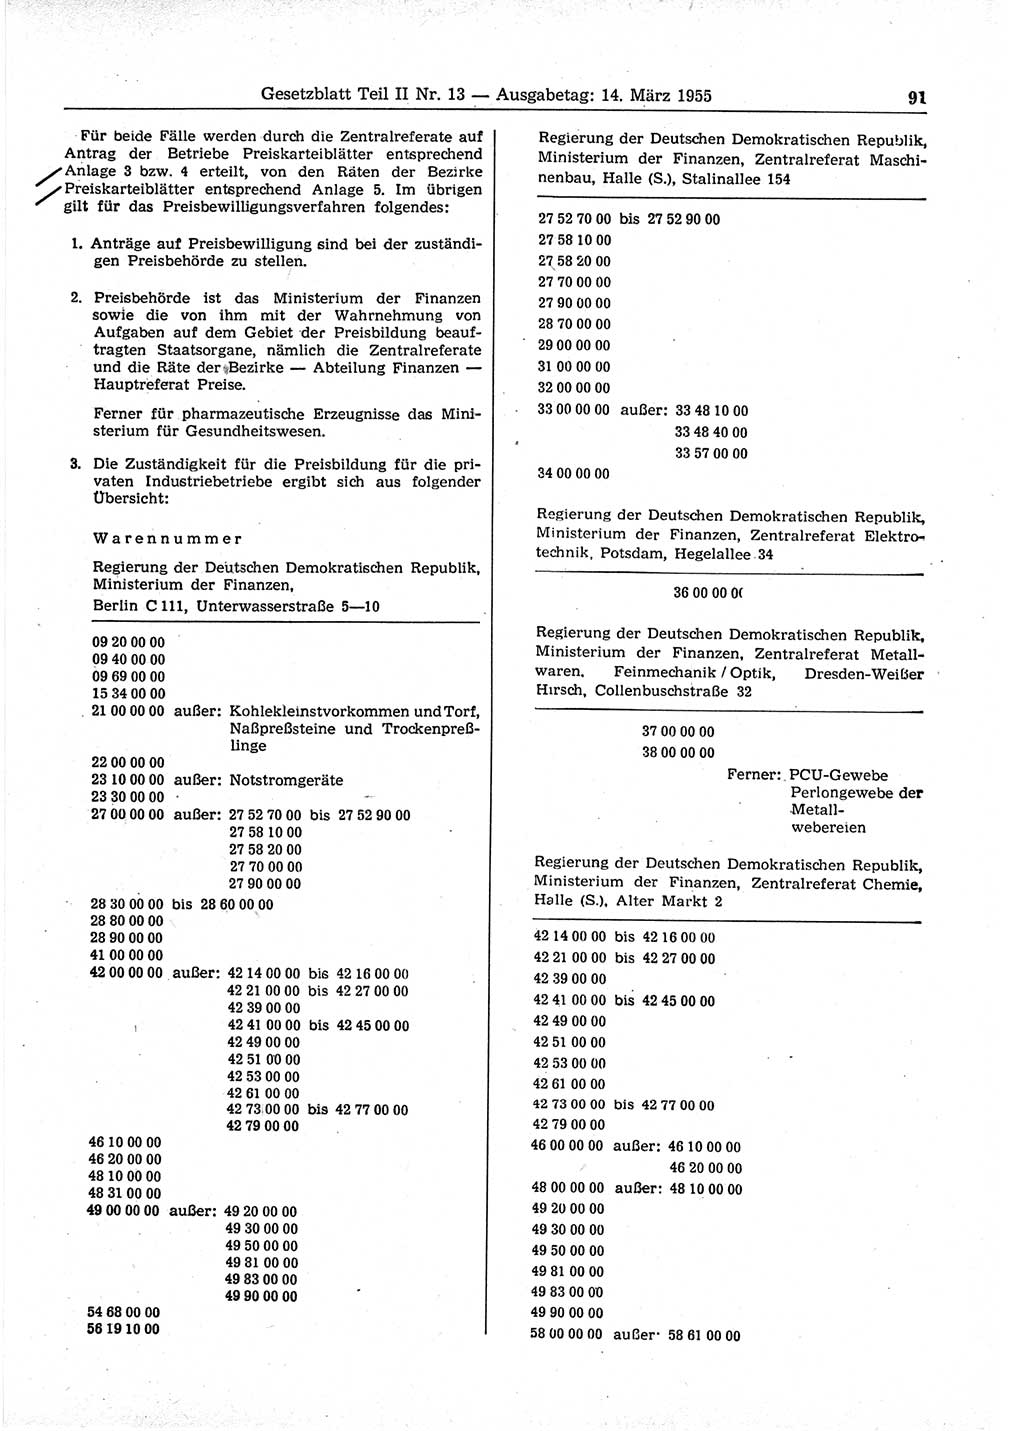 Gesetzblatt (GBl.) der Deutschen Demokratischen Republik (DDR) Teil ⅠⅠ 1955, Seite 91 (GBl. DDR ⅠⅠ 1955, S. 91)